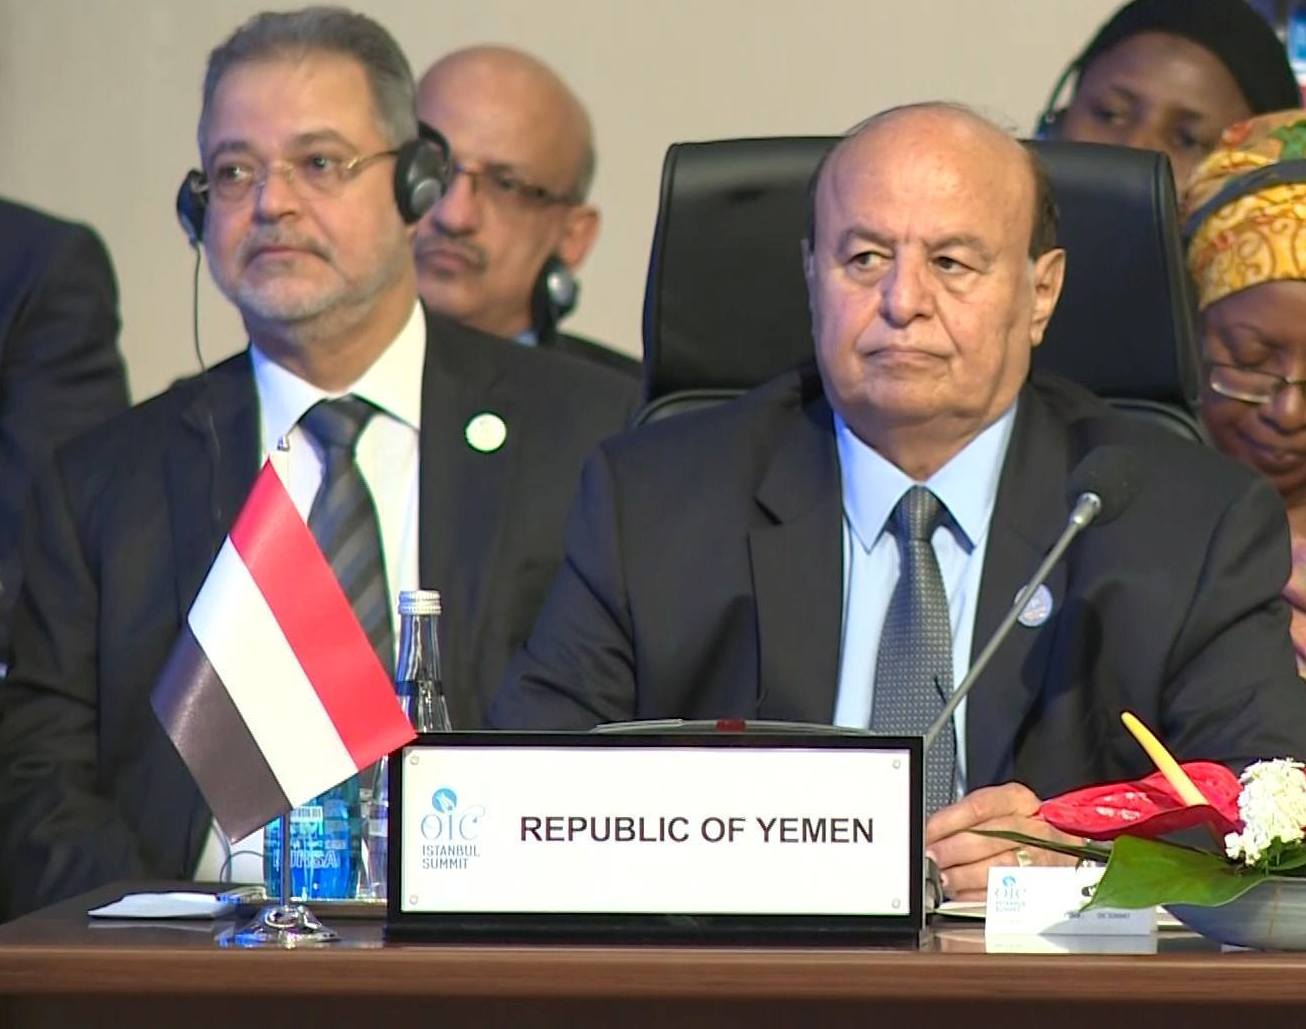 رئيس الجمهورية يجدد التزام اليمن بالمبادئ التي انتهجتها حركة عدم الانحياز